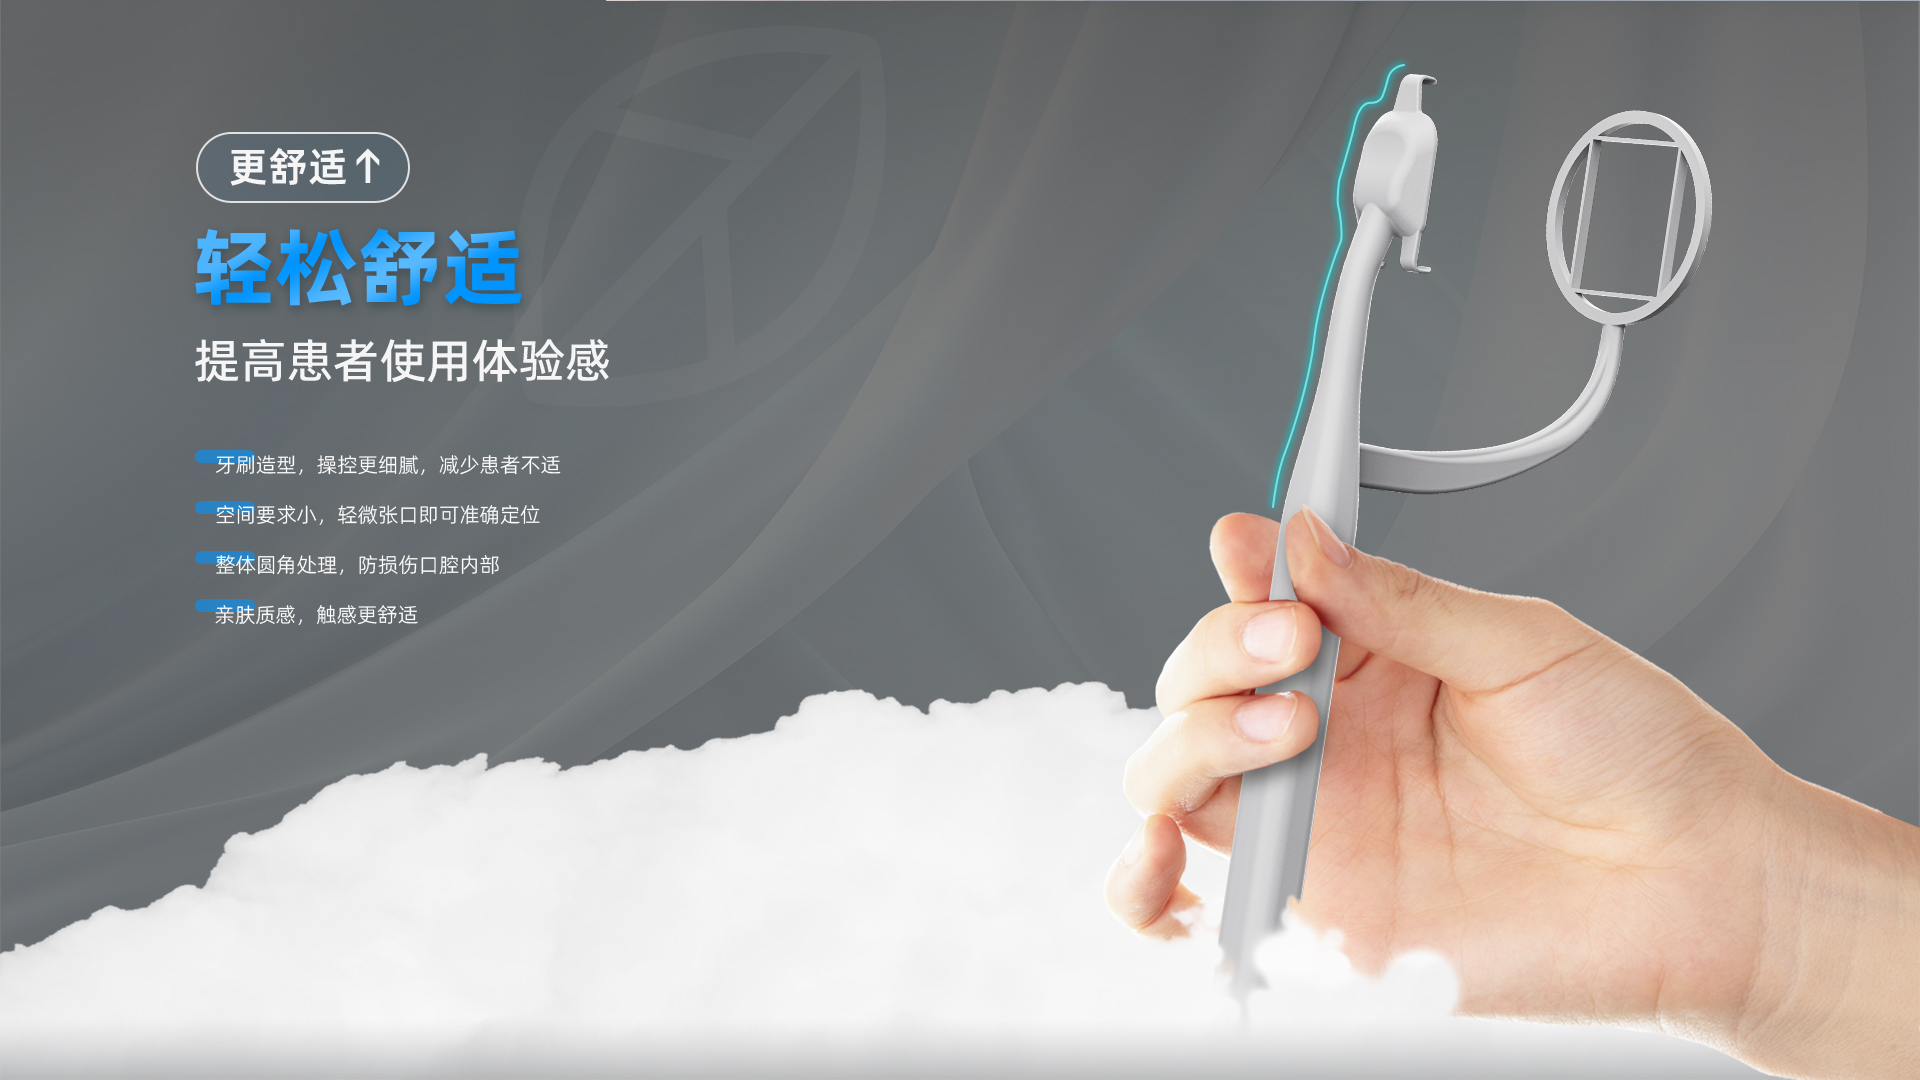 口内传感器支架产品介绍---网站中文_04.jpg